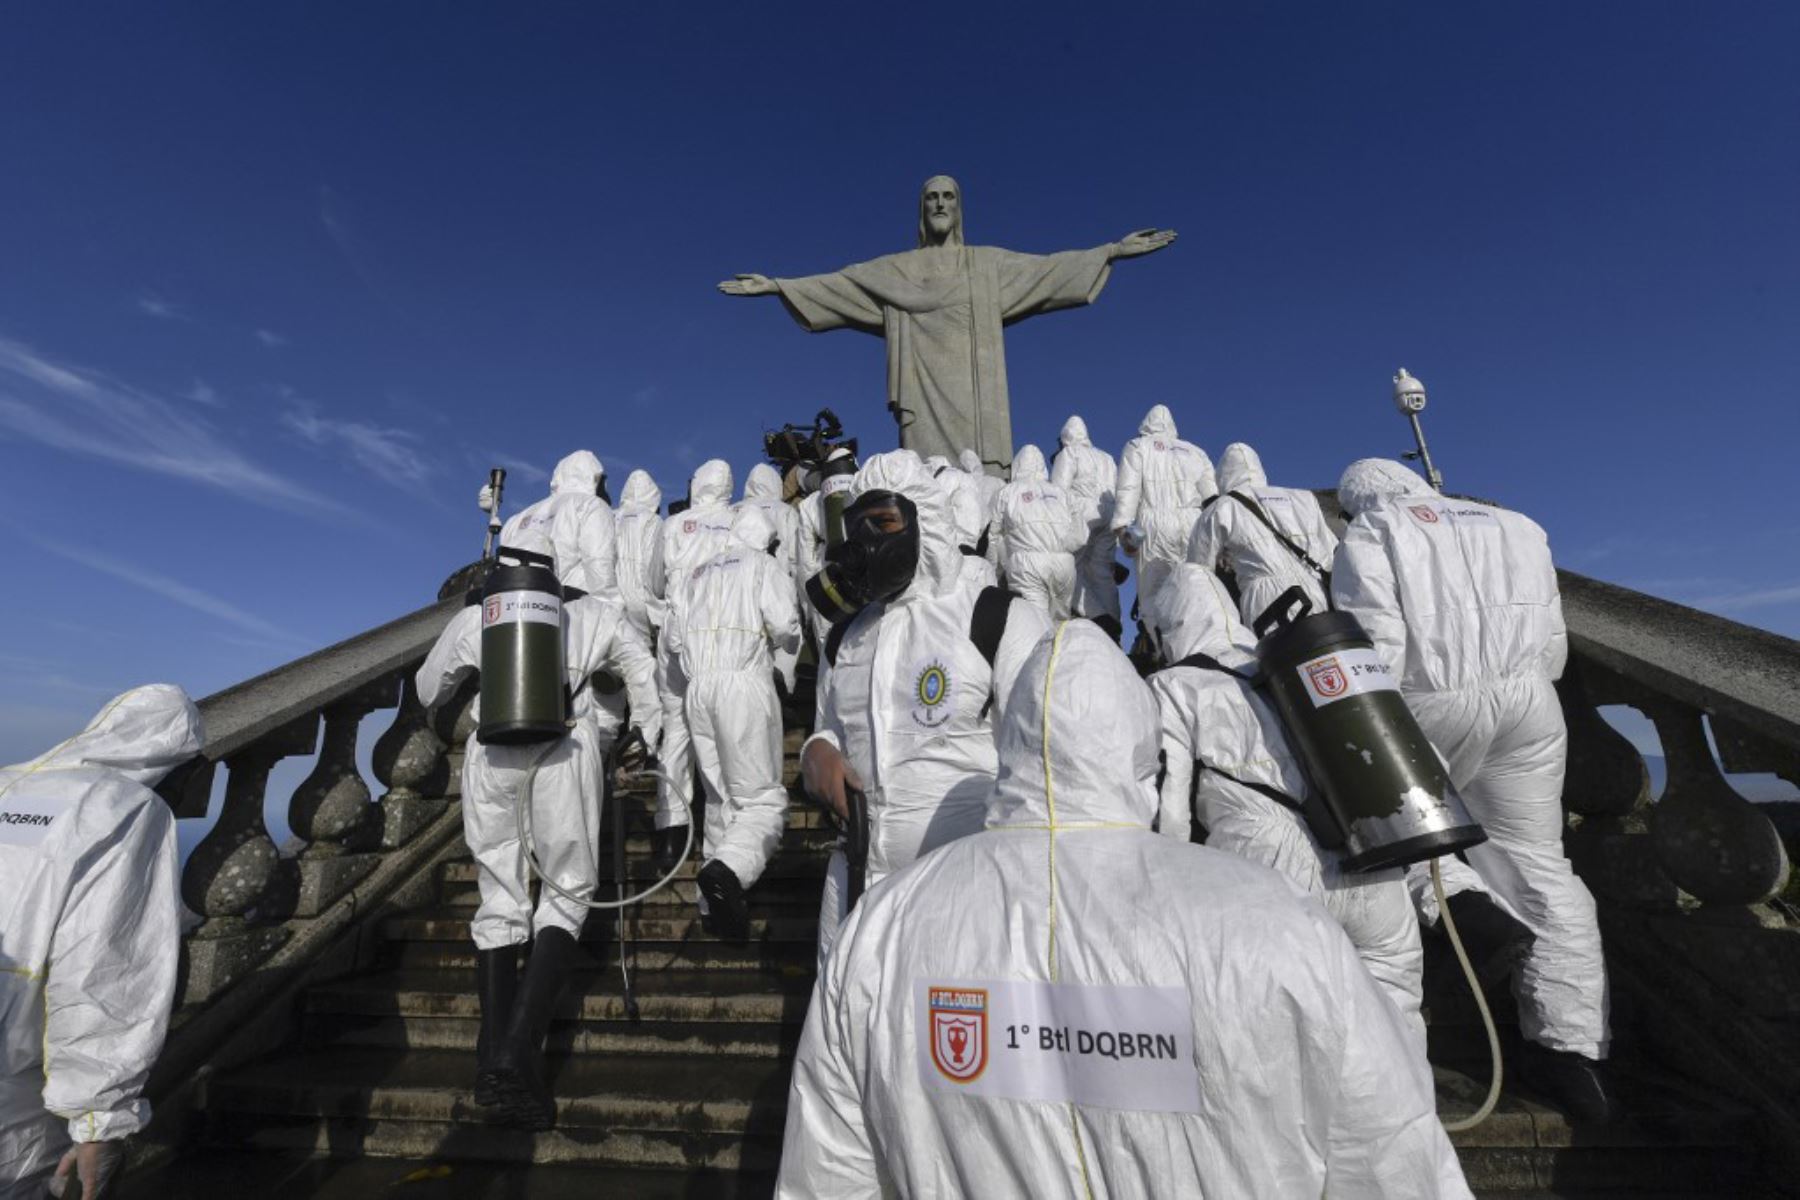 Soldados de las Fuerzas Armadas de Brasil durante los procedimientos de desinfección de la estatua del Cristo Redentor en la montaña Corcovado, en Río de Janeiro, Brasil, en medio de la pandemia por coronavirus.

Foto: AFP